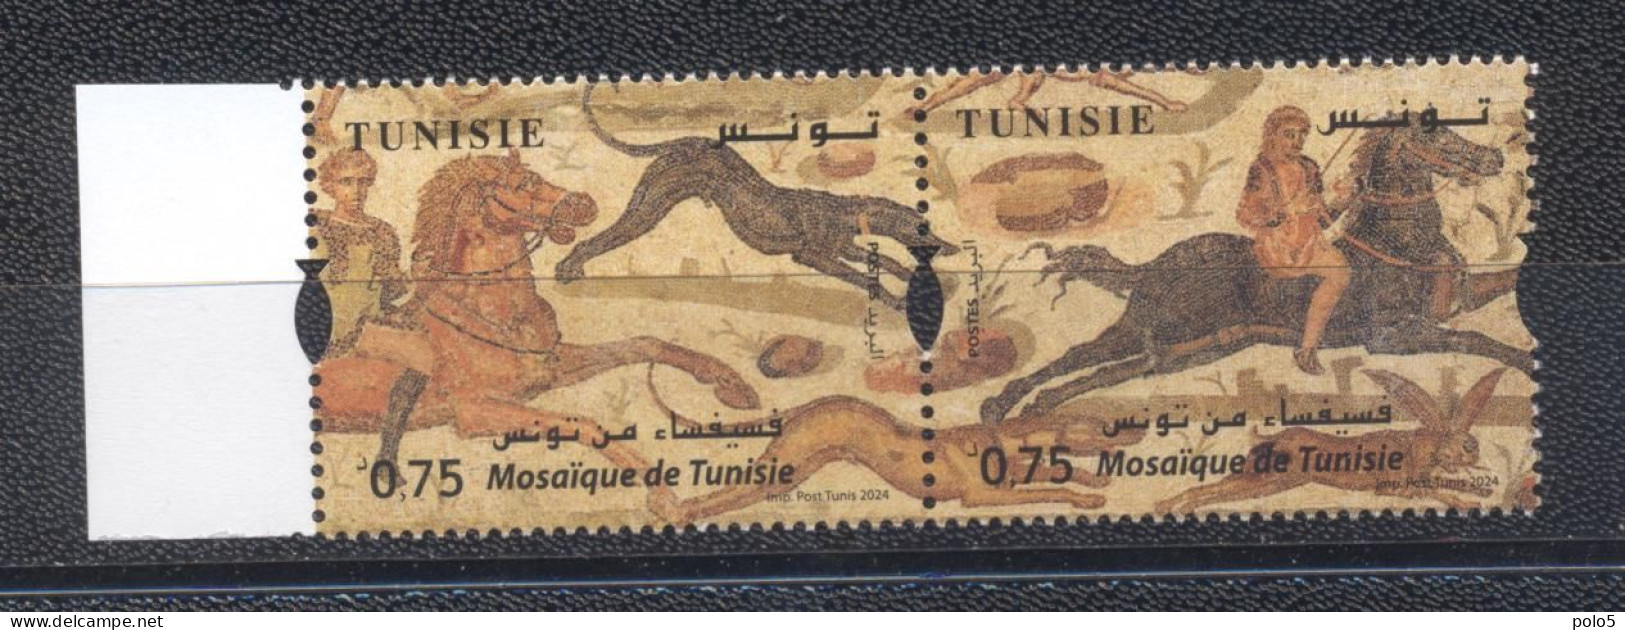 Tunisie 2024- Mosaique De Tunisie Paire - Tunisie (1956-...)